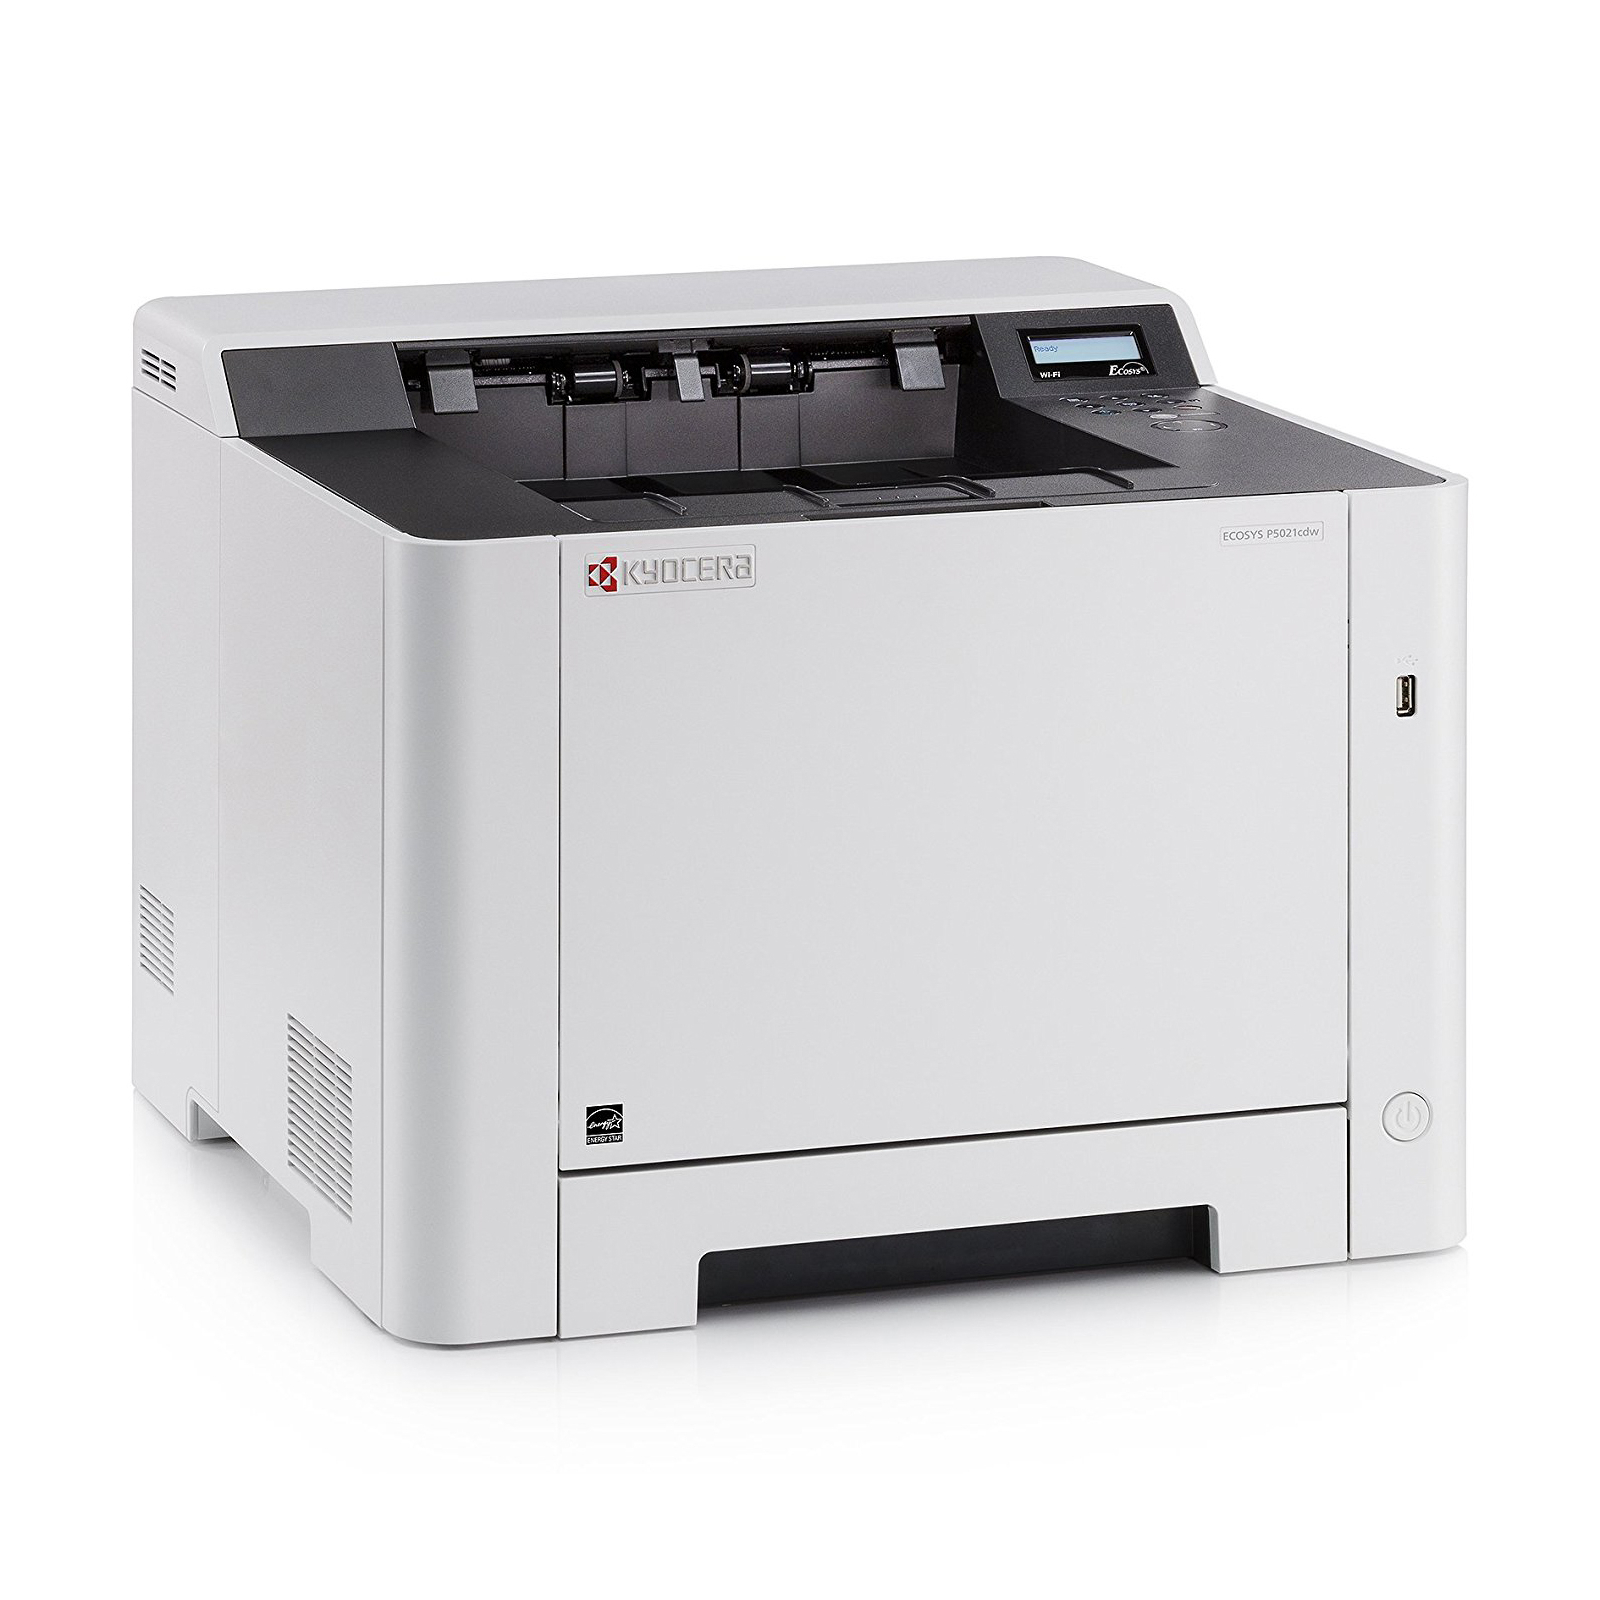 Лазерний принтер Kyocera Ecosys P5021CDN (1102RF3NL0) зображення 3